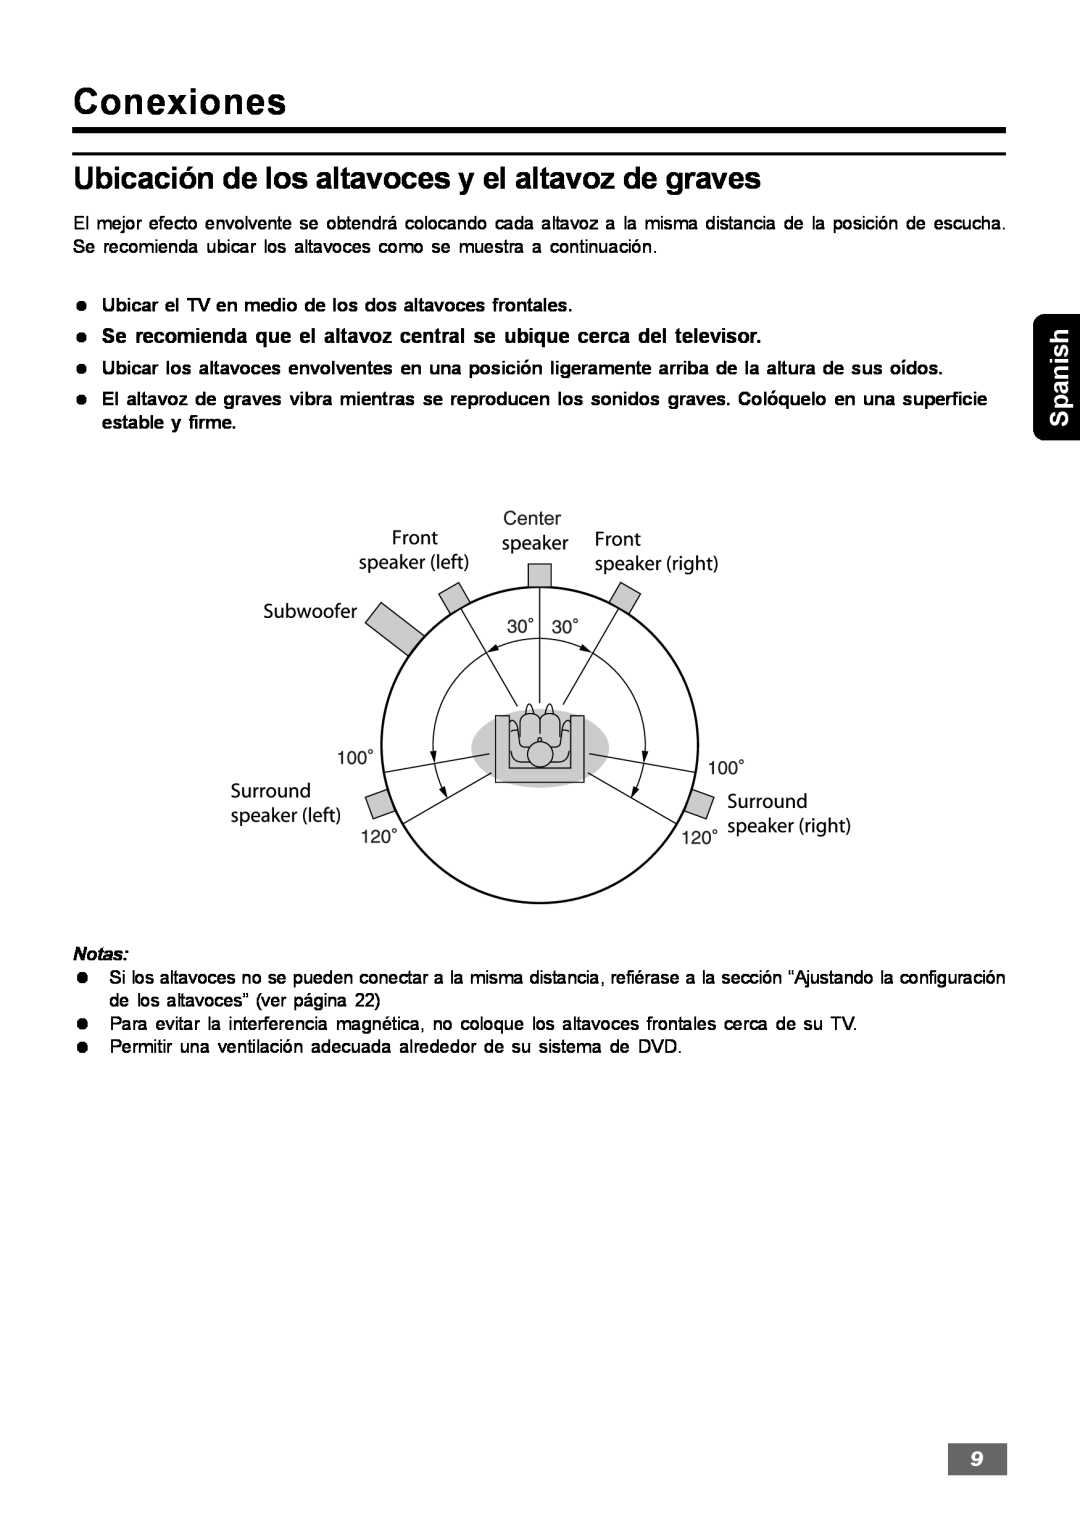 Insignia IS-HTIB102731 owner manual Conexiones, Ubicación de los altavoces y el altavoz de graves, Spanish 